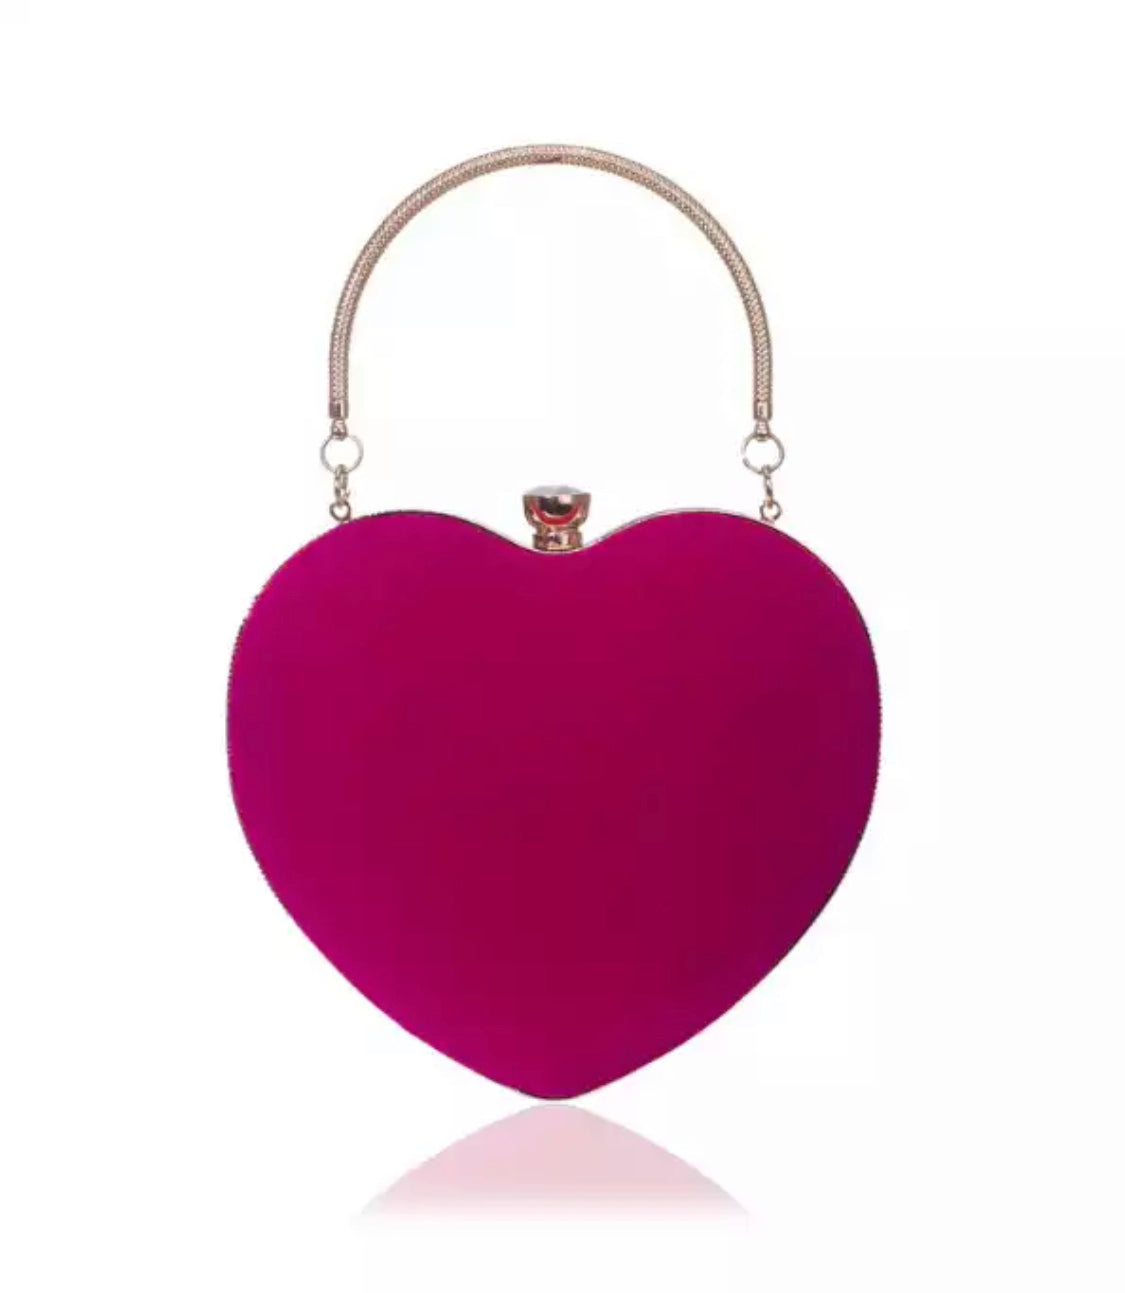 Fuchsia Velvet Heart Bag w/Gold Handle & Chain